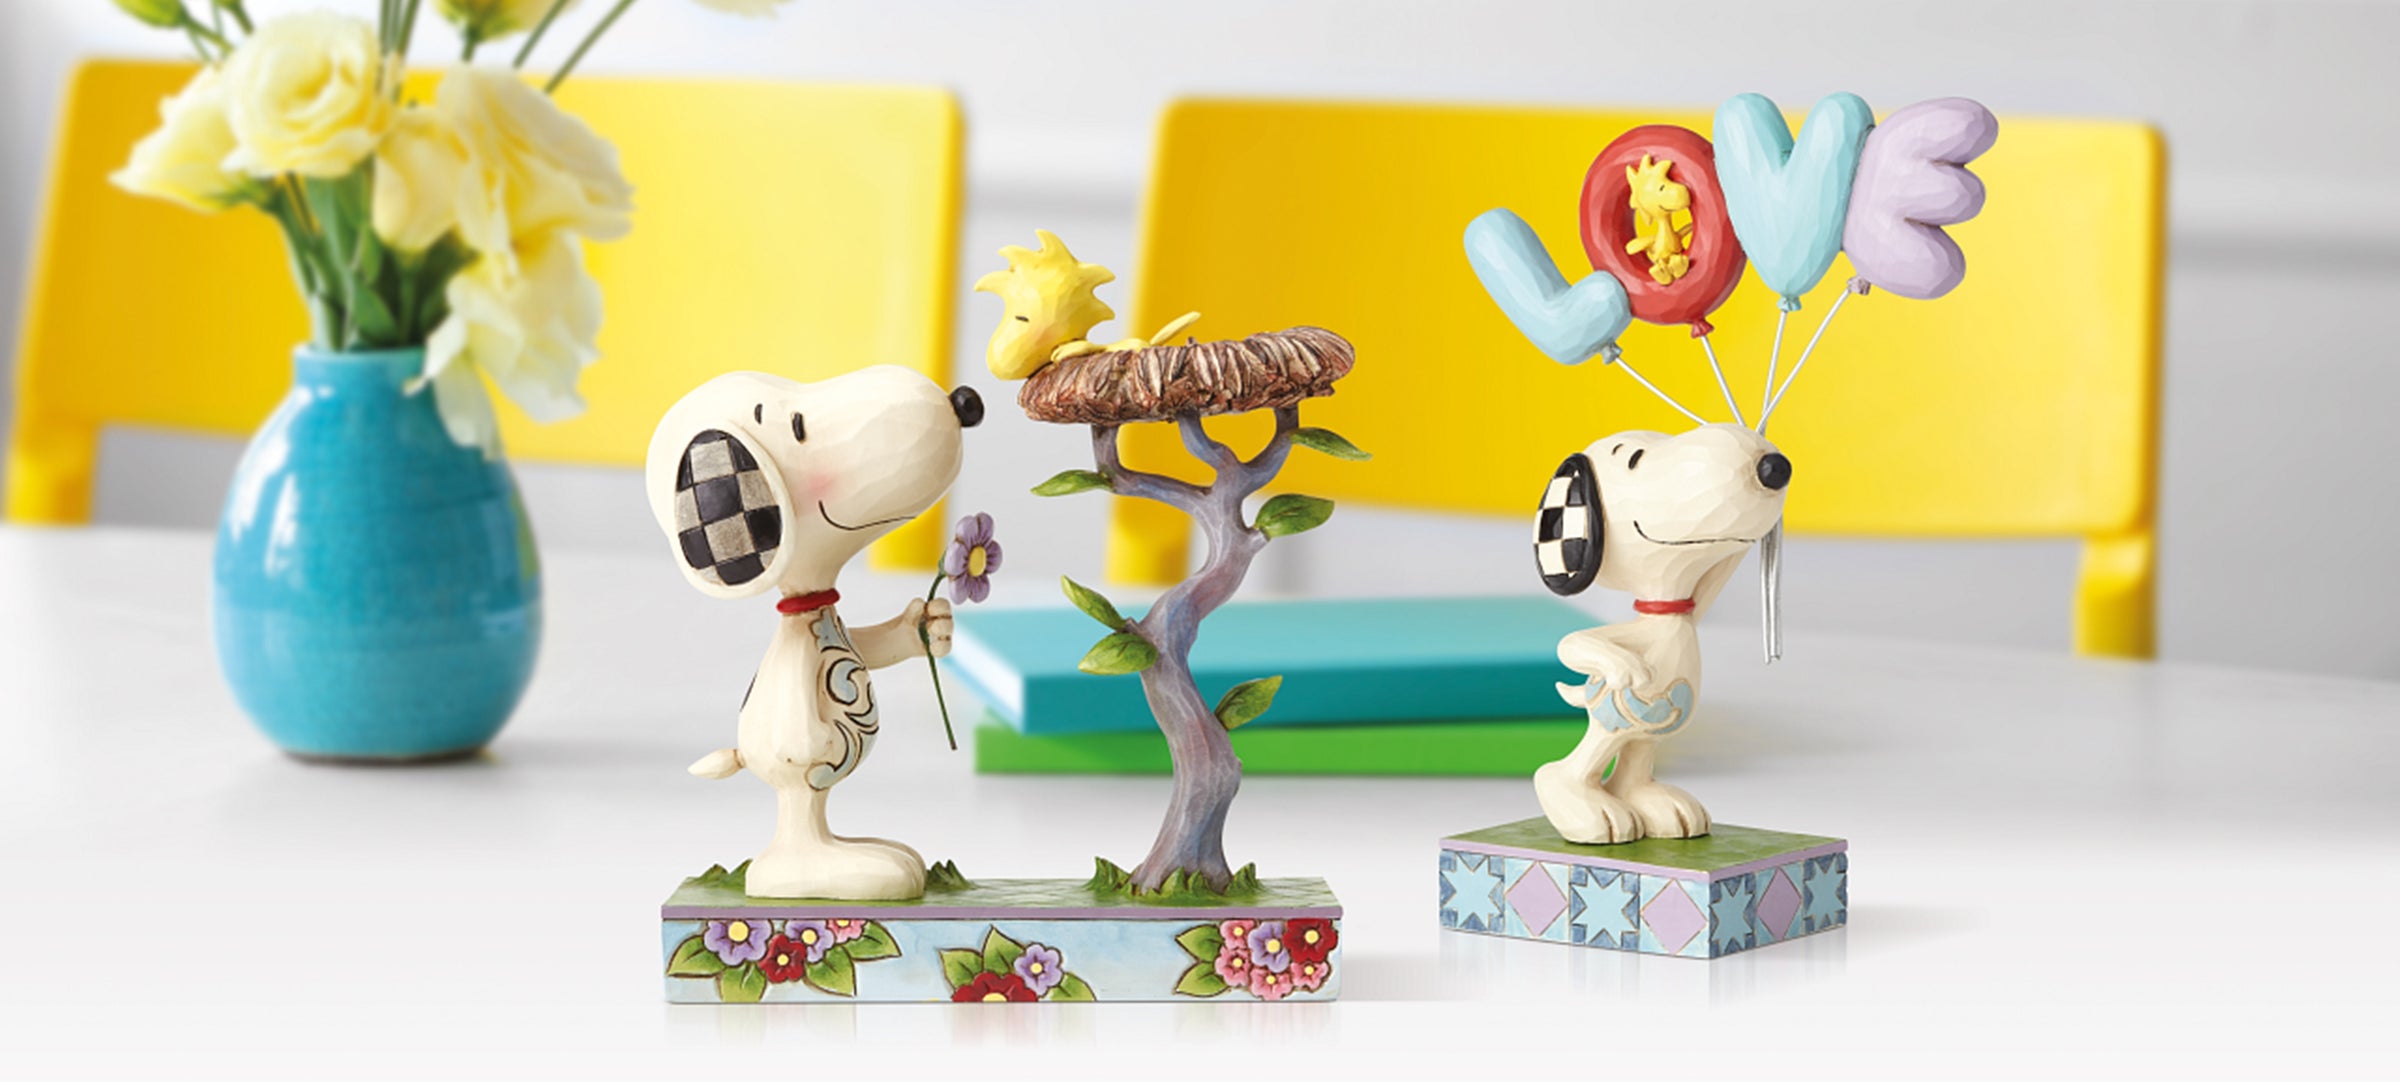 Snoopy – Der Staubfänger